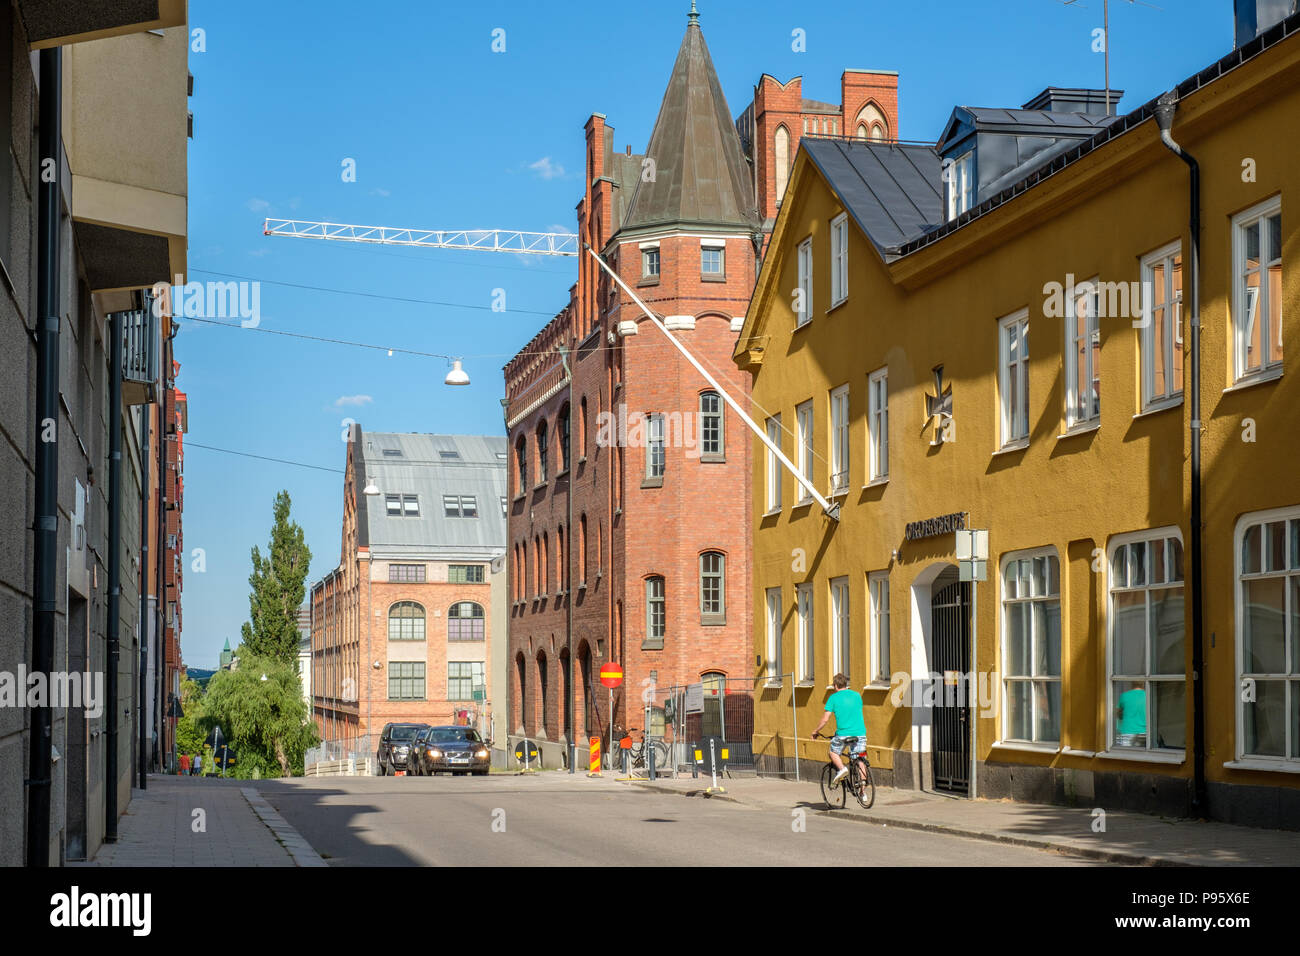 Albergo per ordine fraterno W6 (edificio giallo) a Bredgatan nel centro di Norrkoping. Norrkoping è una storica città industriale. Foto Stock